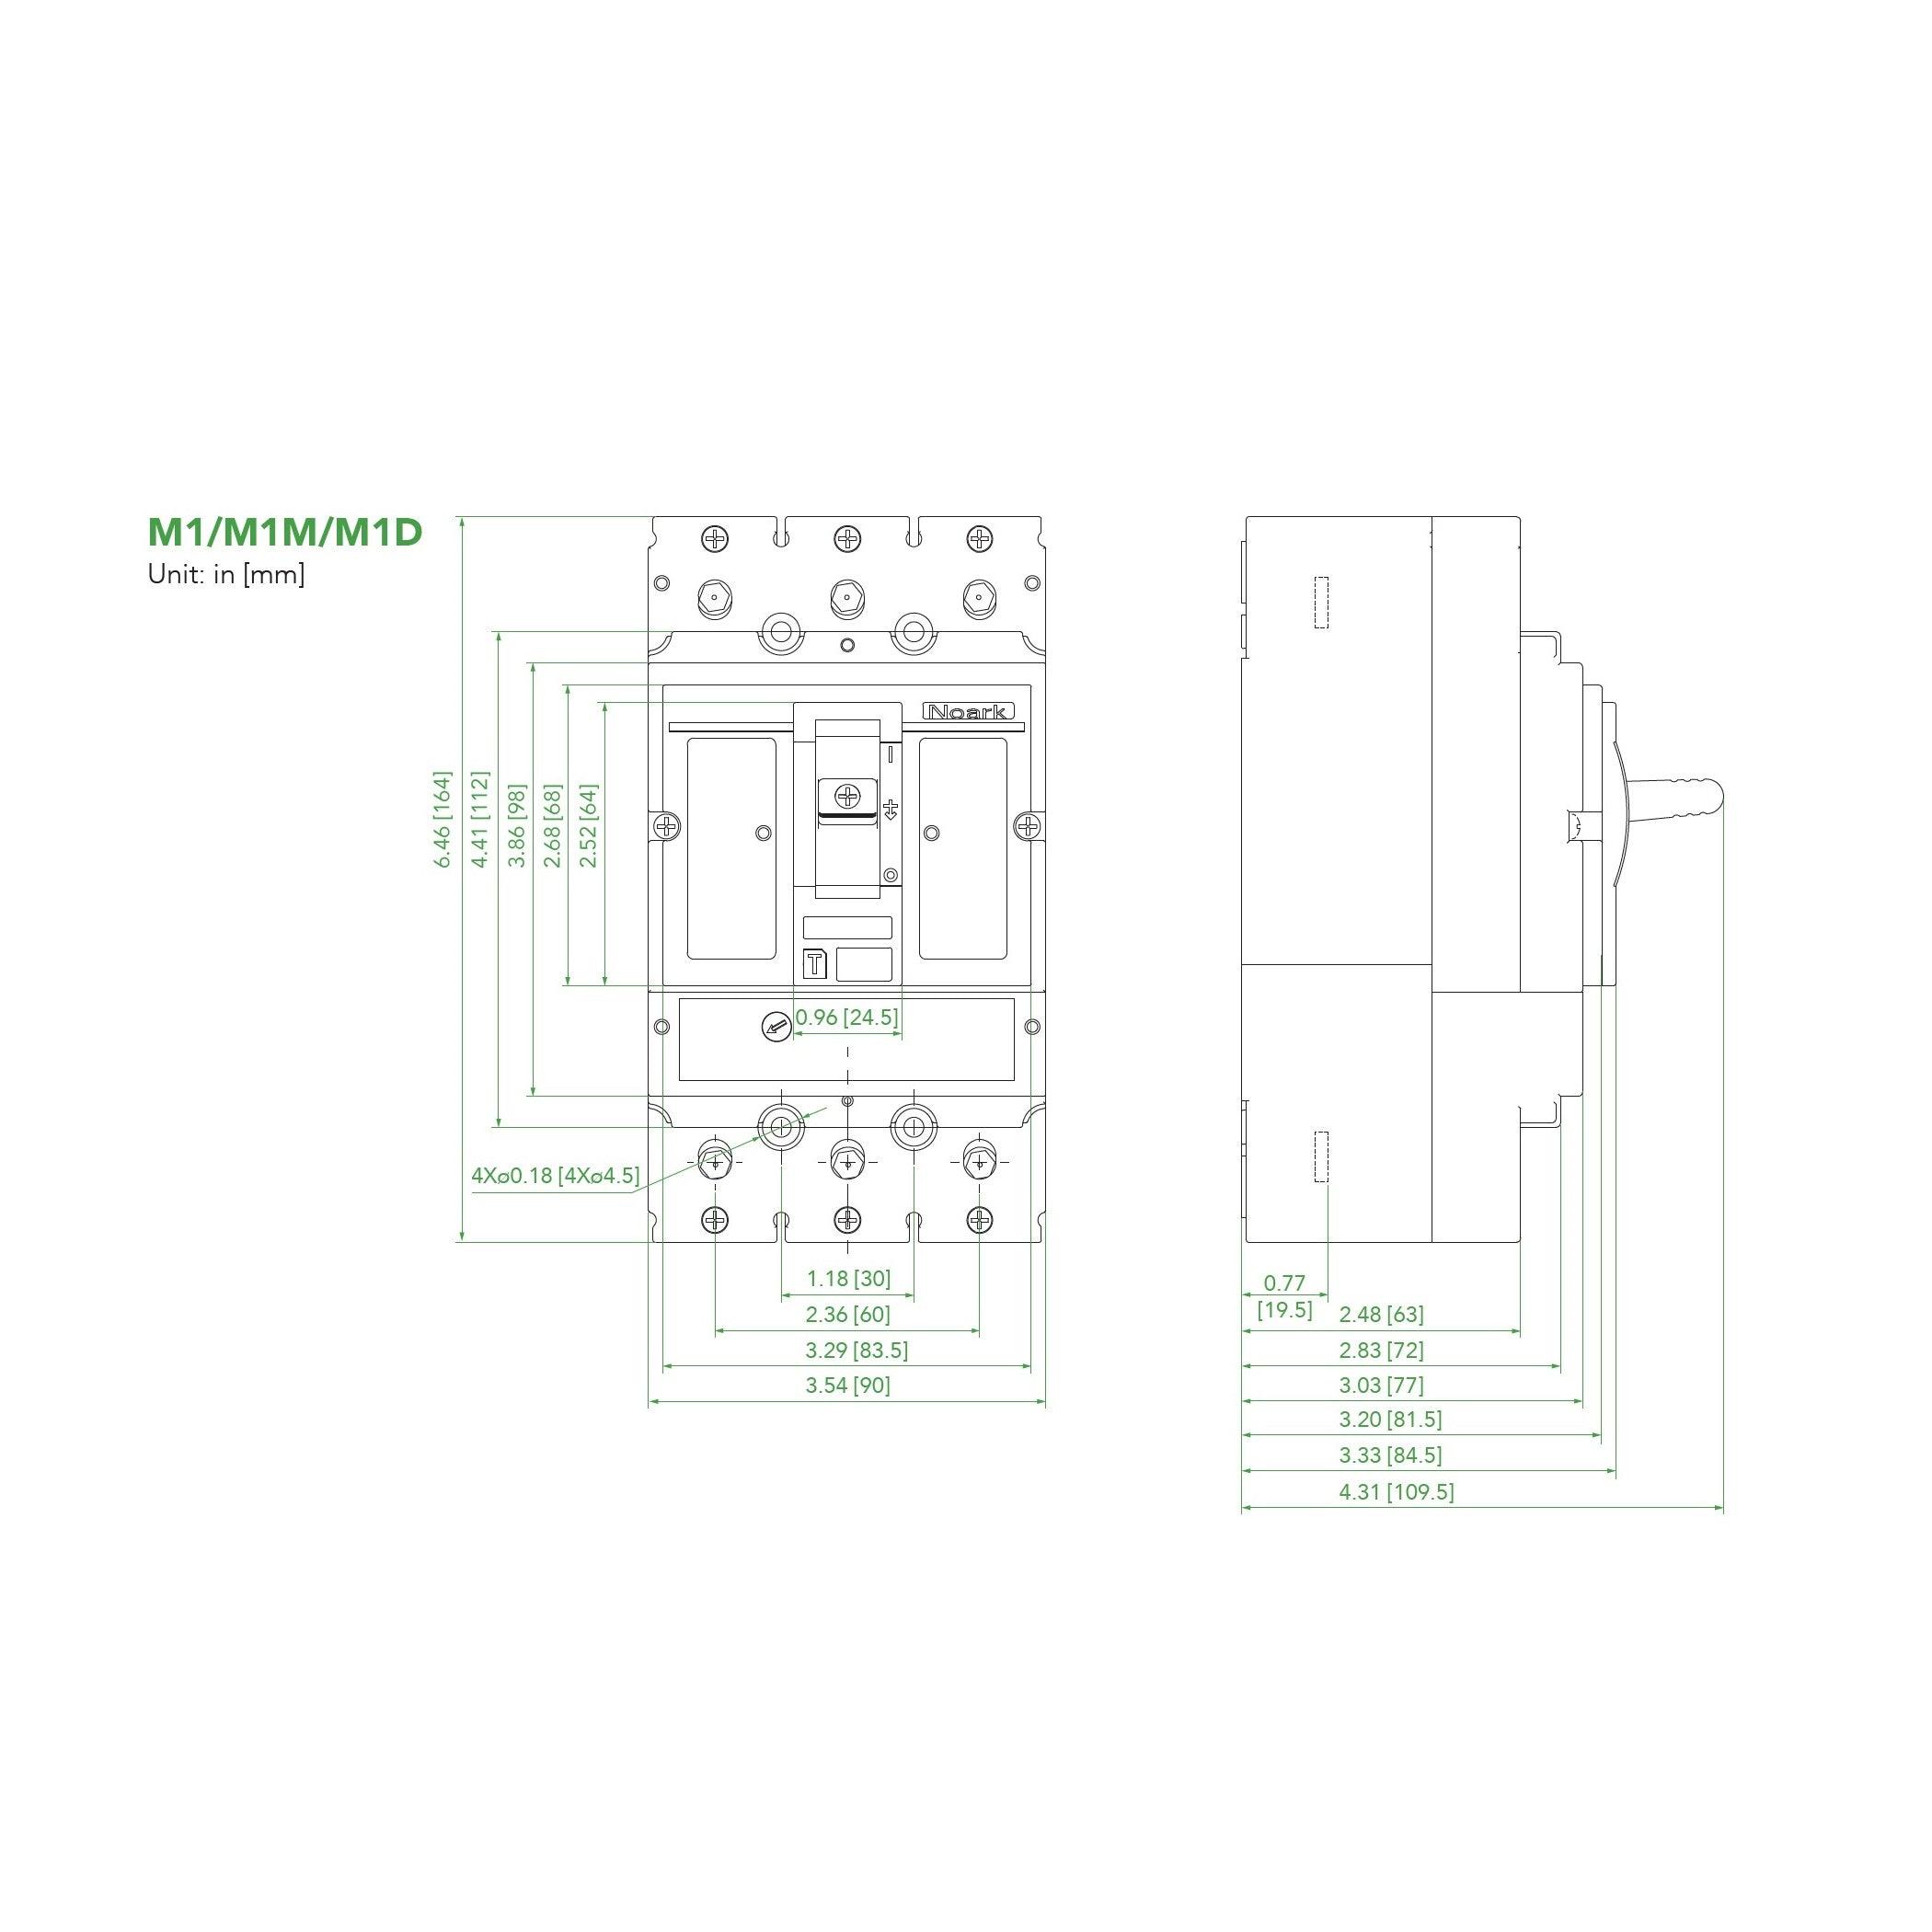 NOARK® Molded Case Circuit Breaker 35A, 3P IC Class H | M1H35T3L - Forces Inc